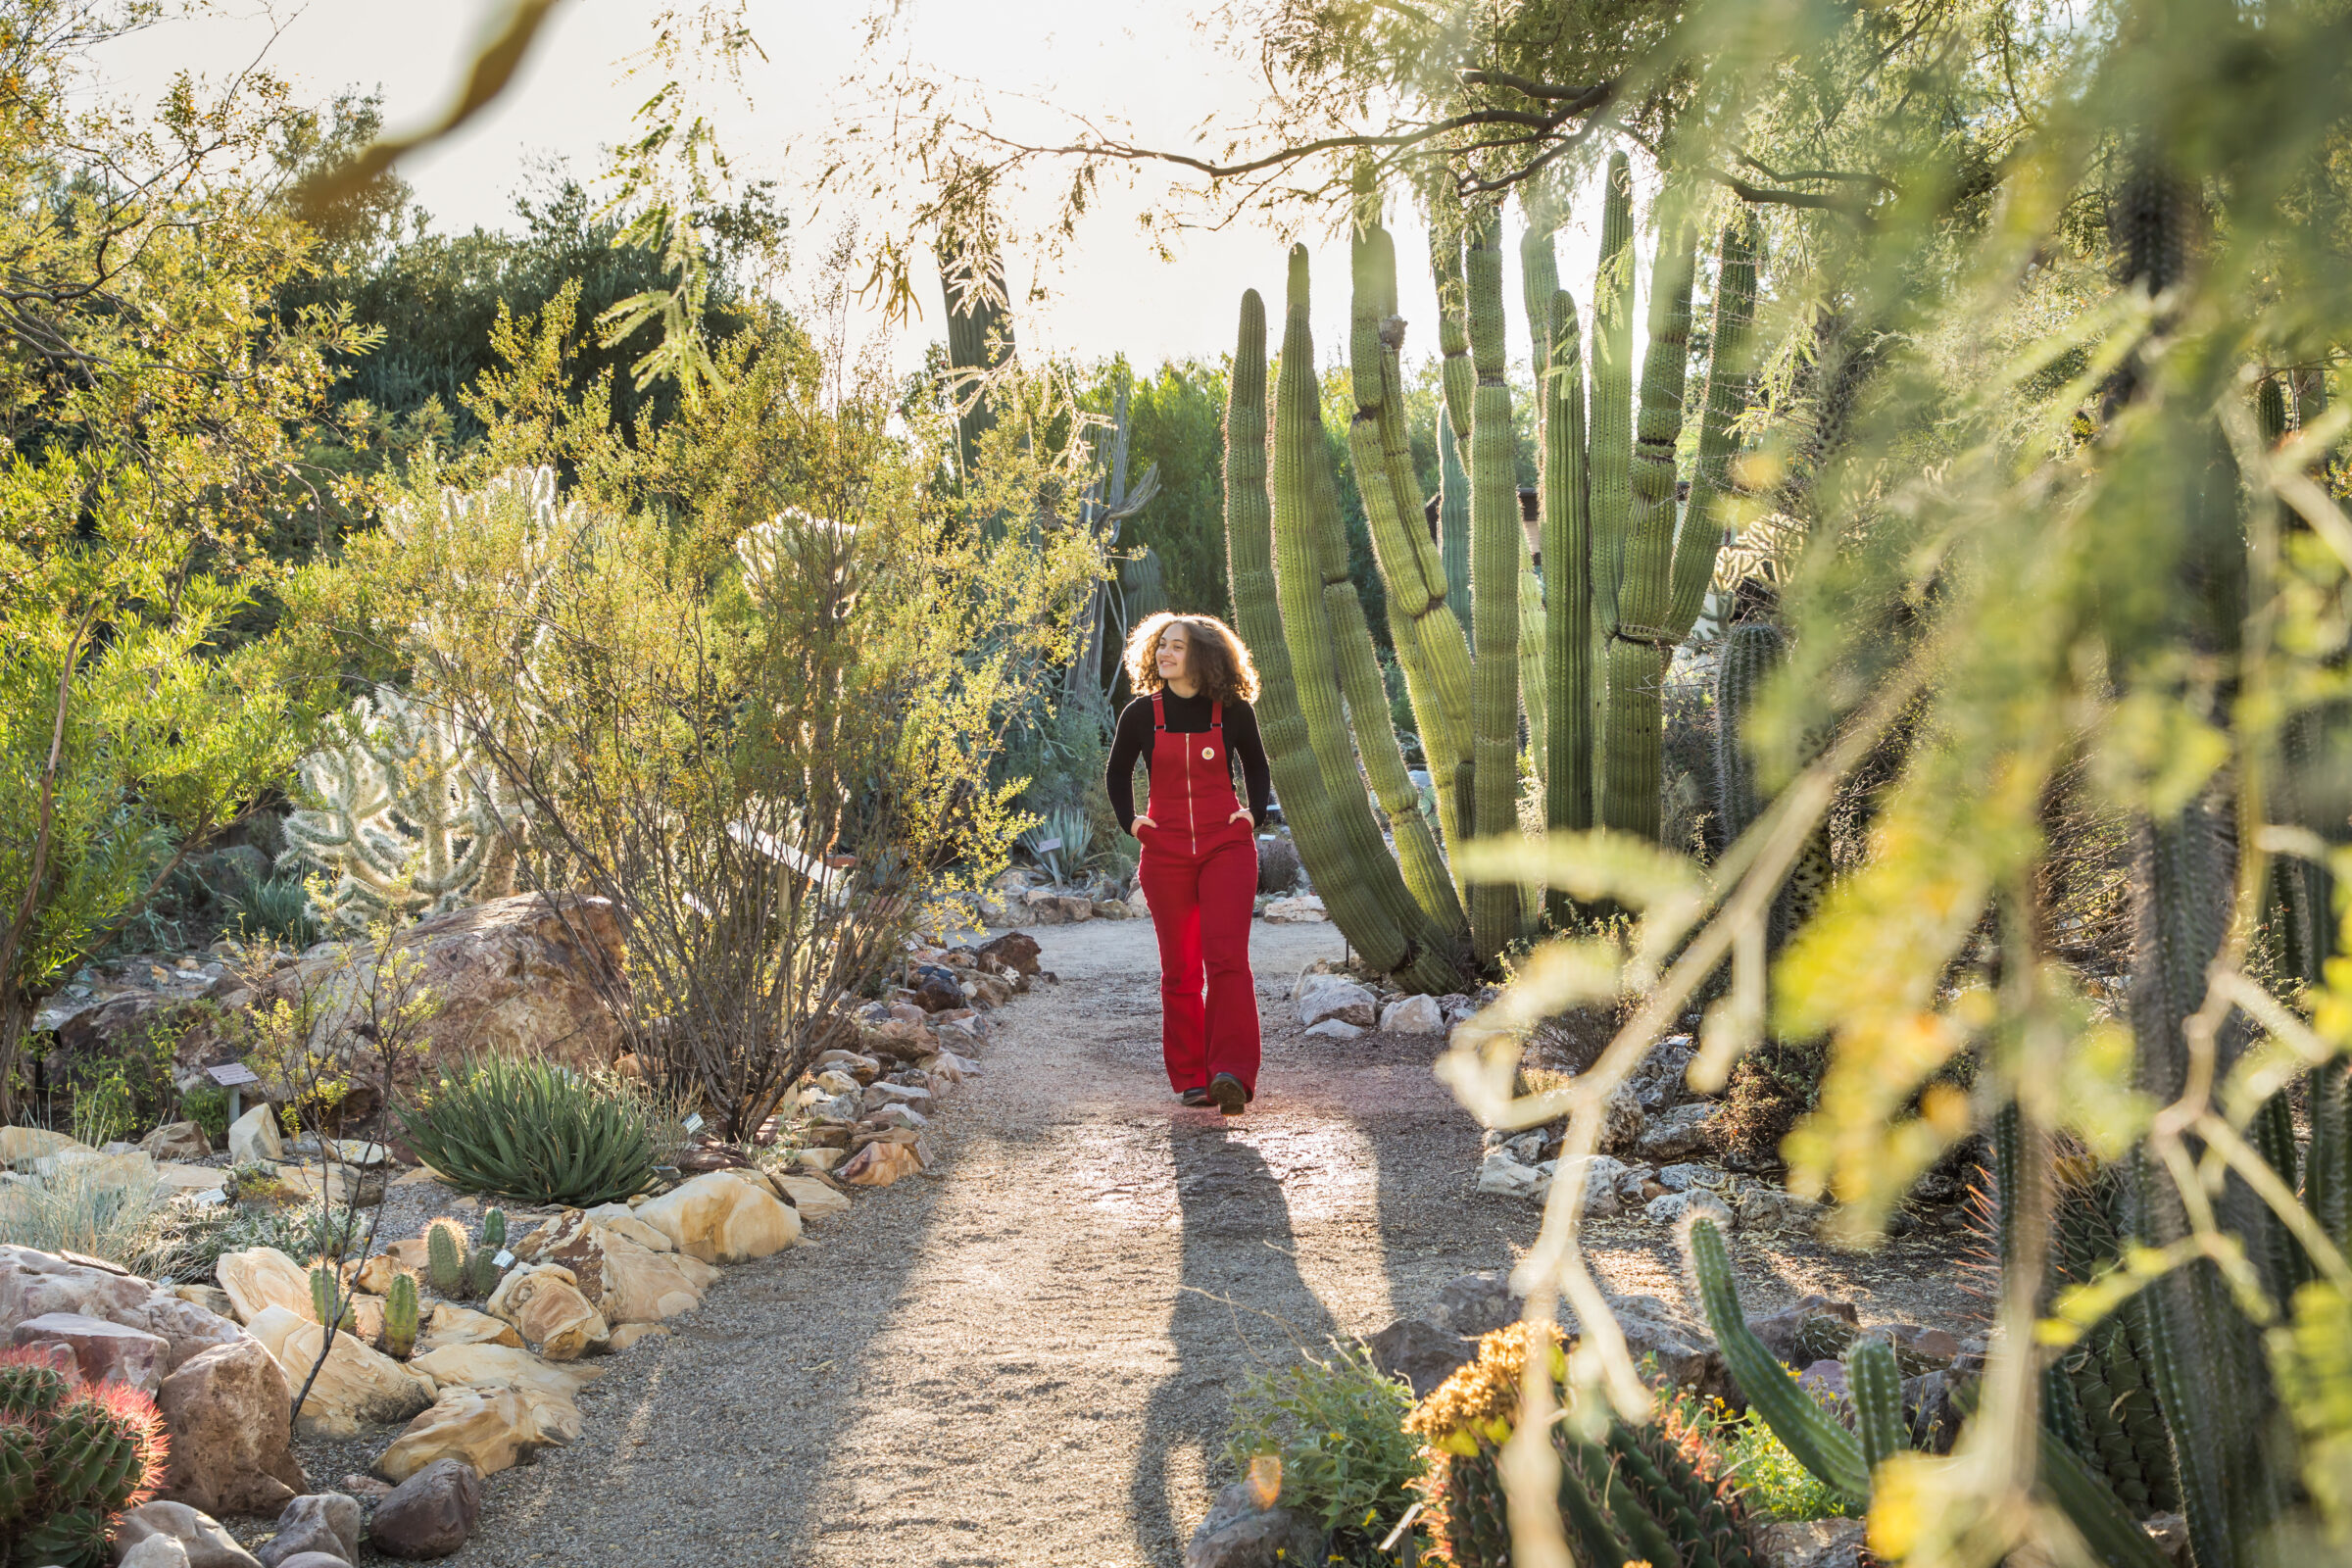 Photograph of girl in cactus garden